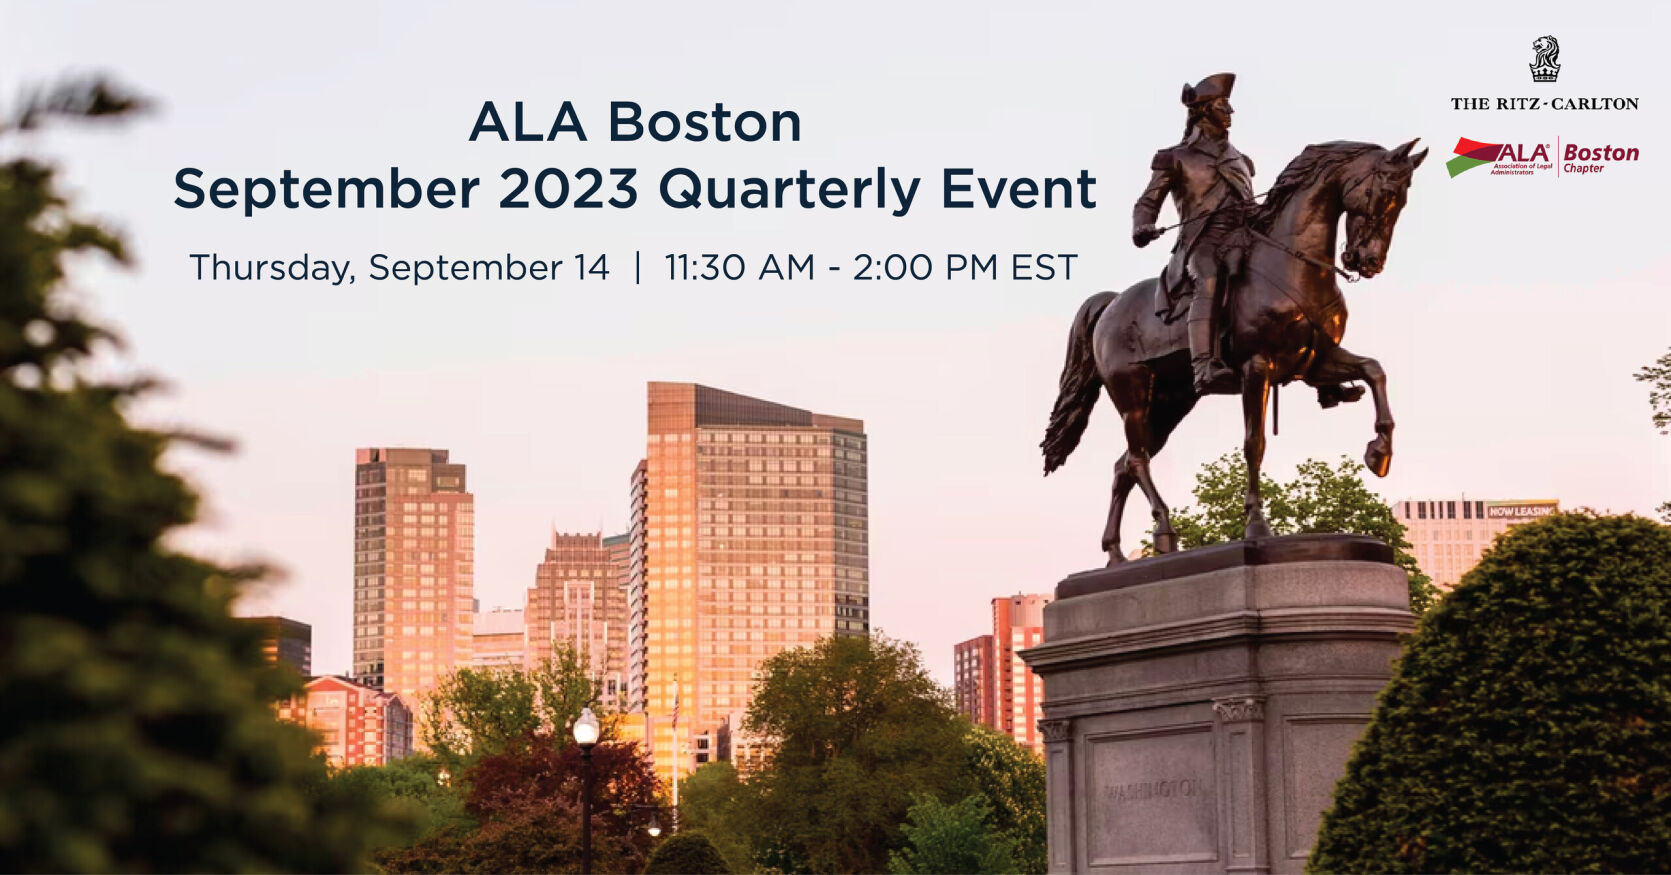 ALA Boston September 2023 Quarterly Event